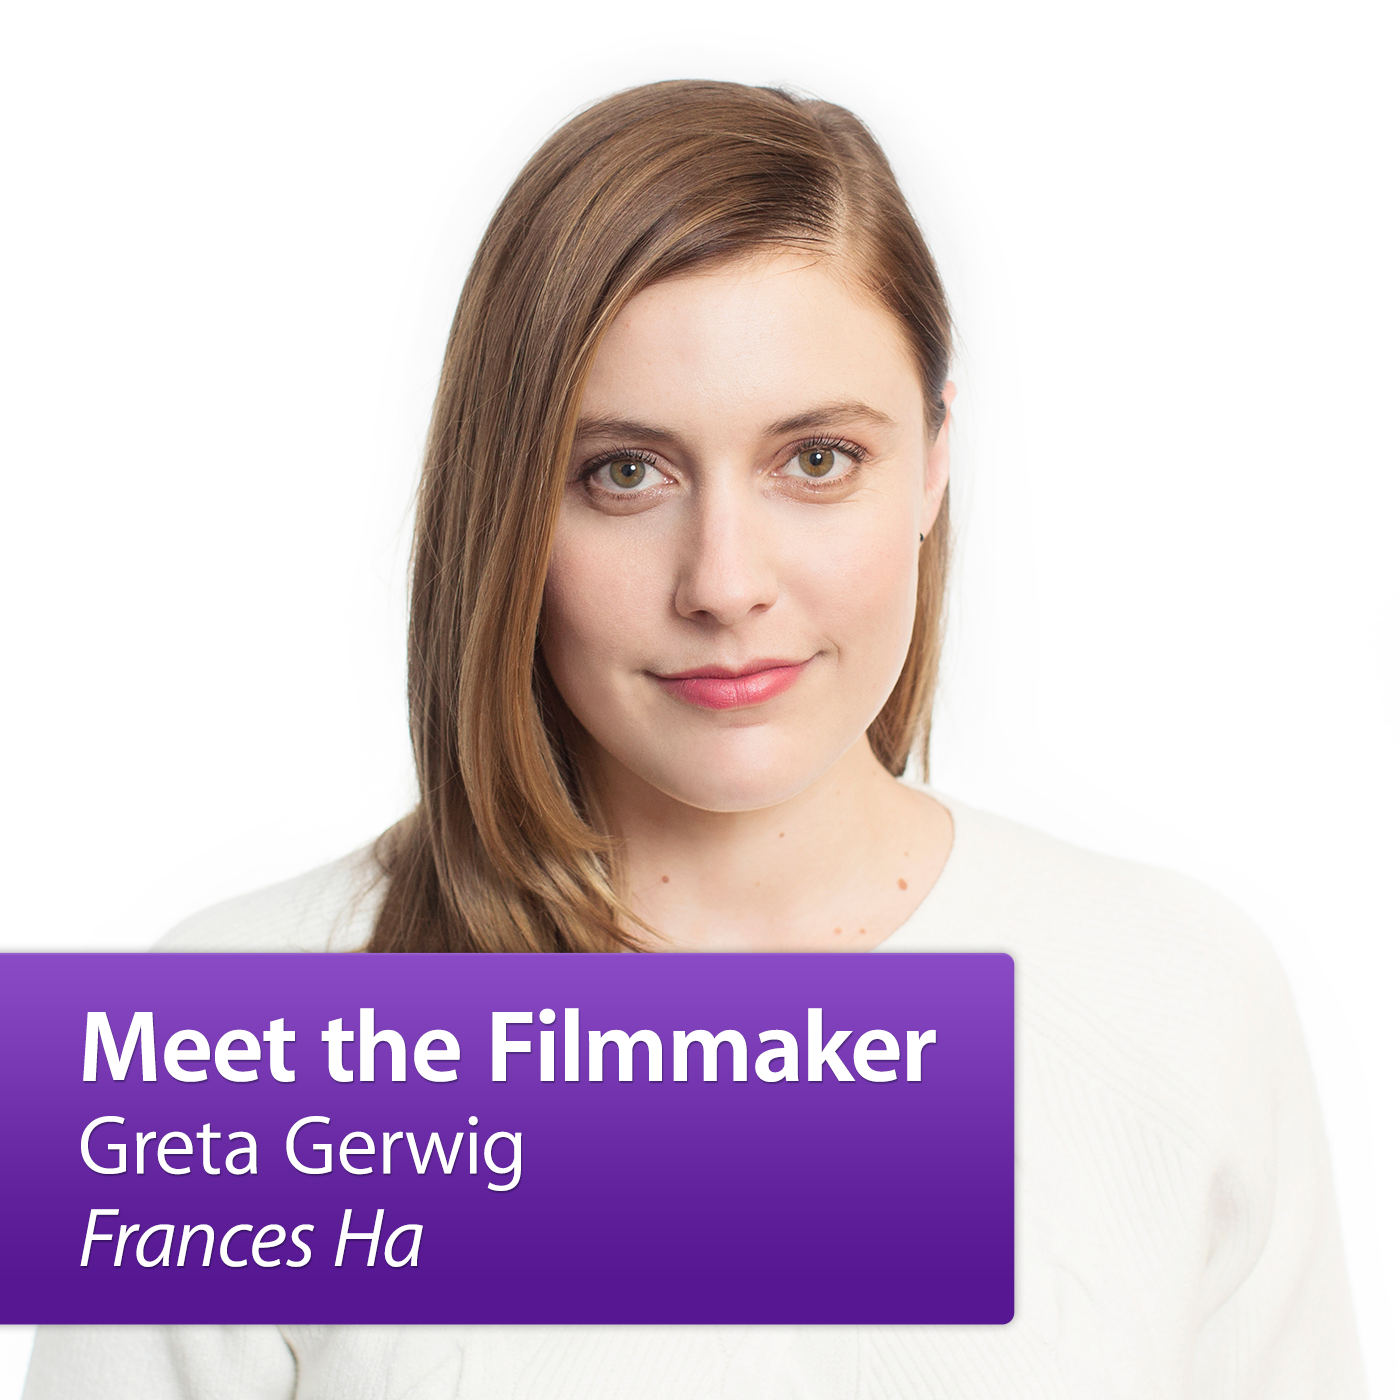 Greta Gerwig, "Frances Ha": Meet the Filmmaker